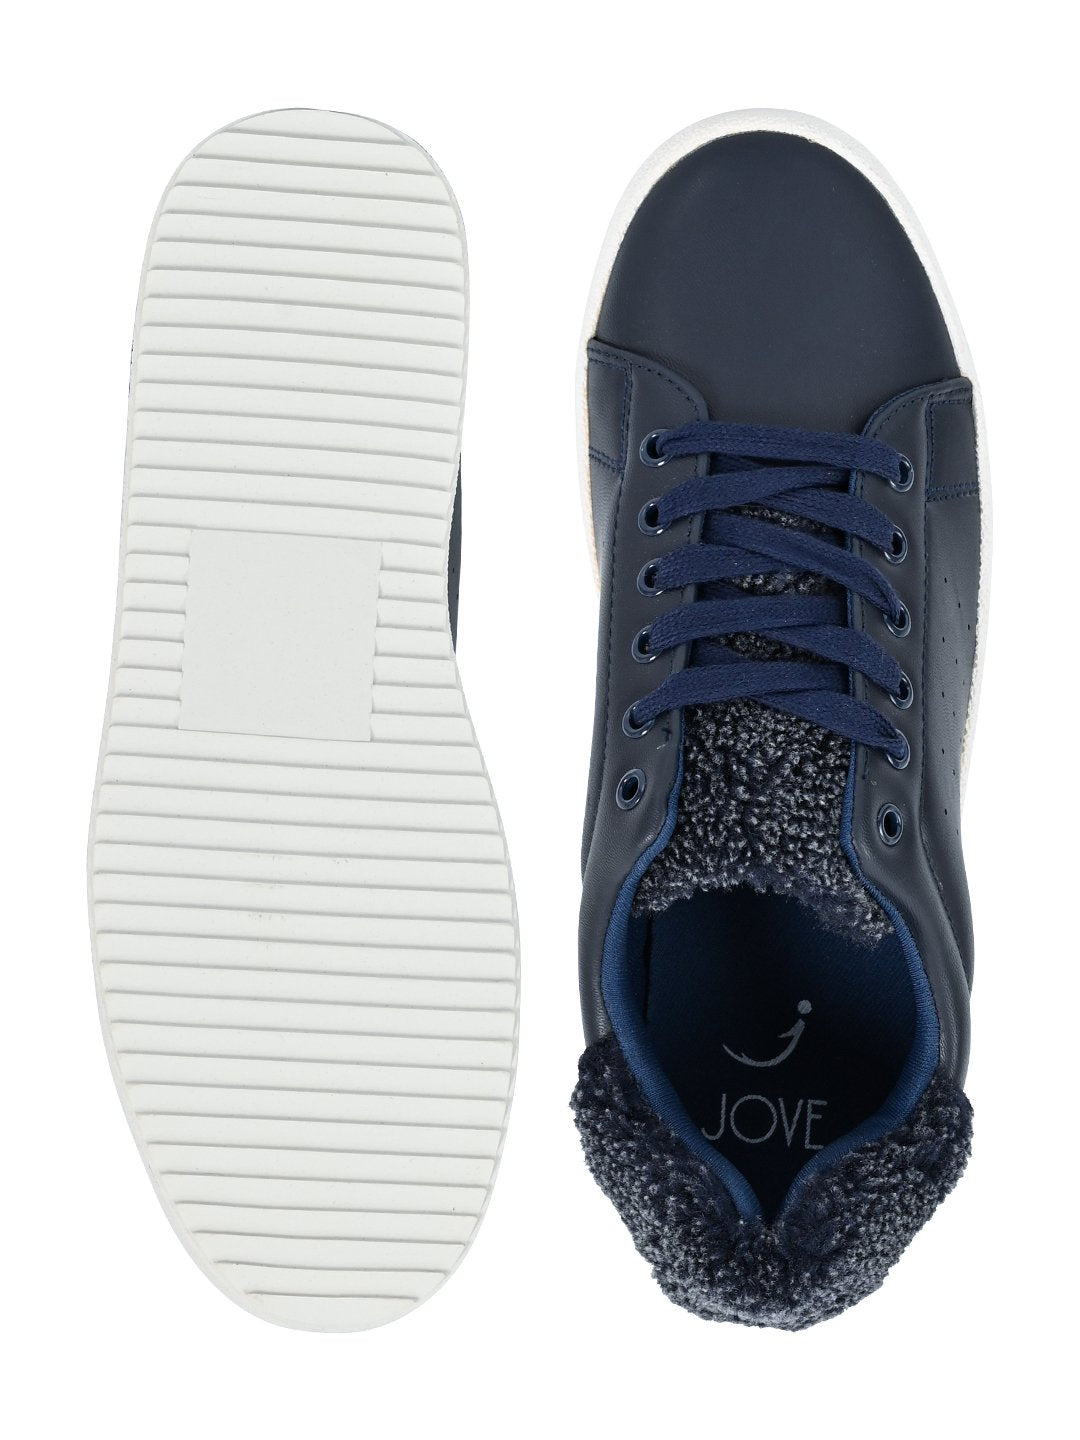 Footwear, Women Footwear, Navy Blue Sneakers